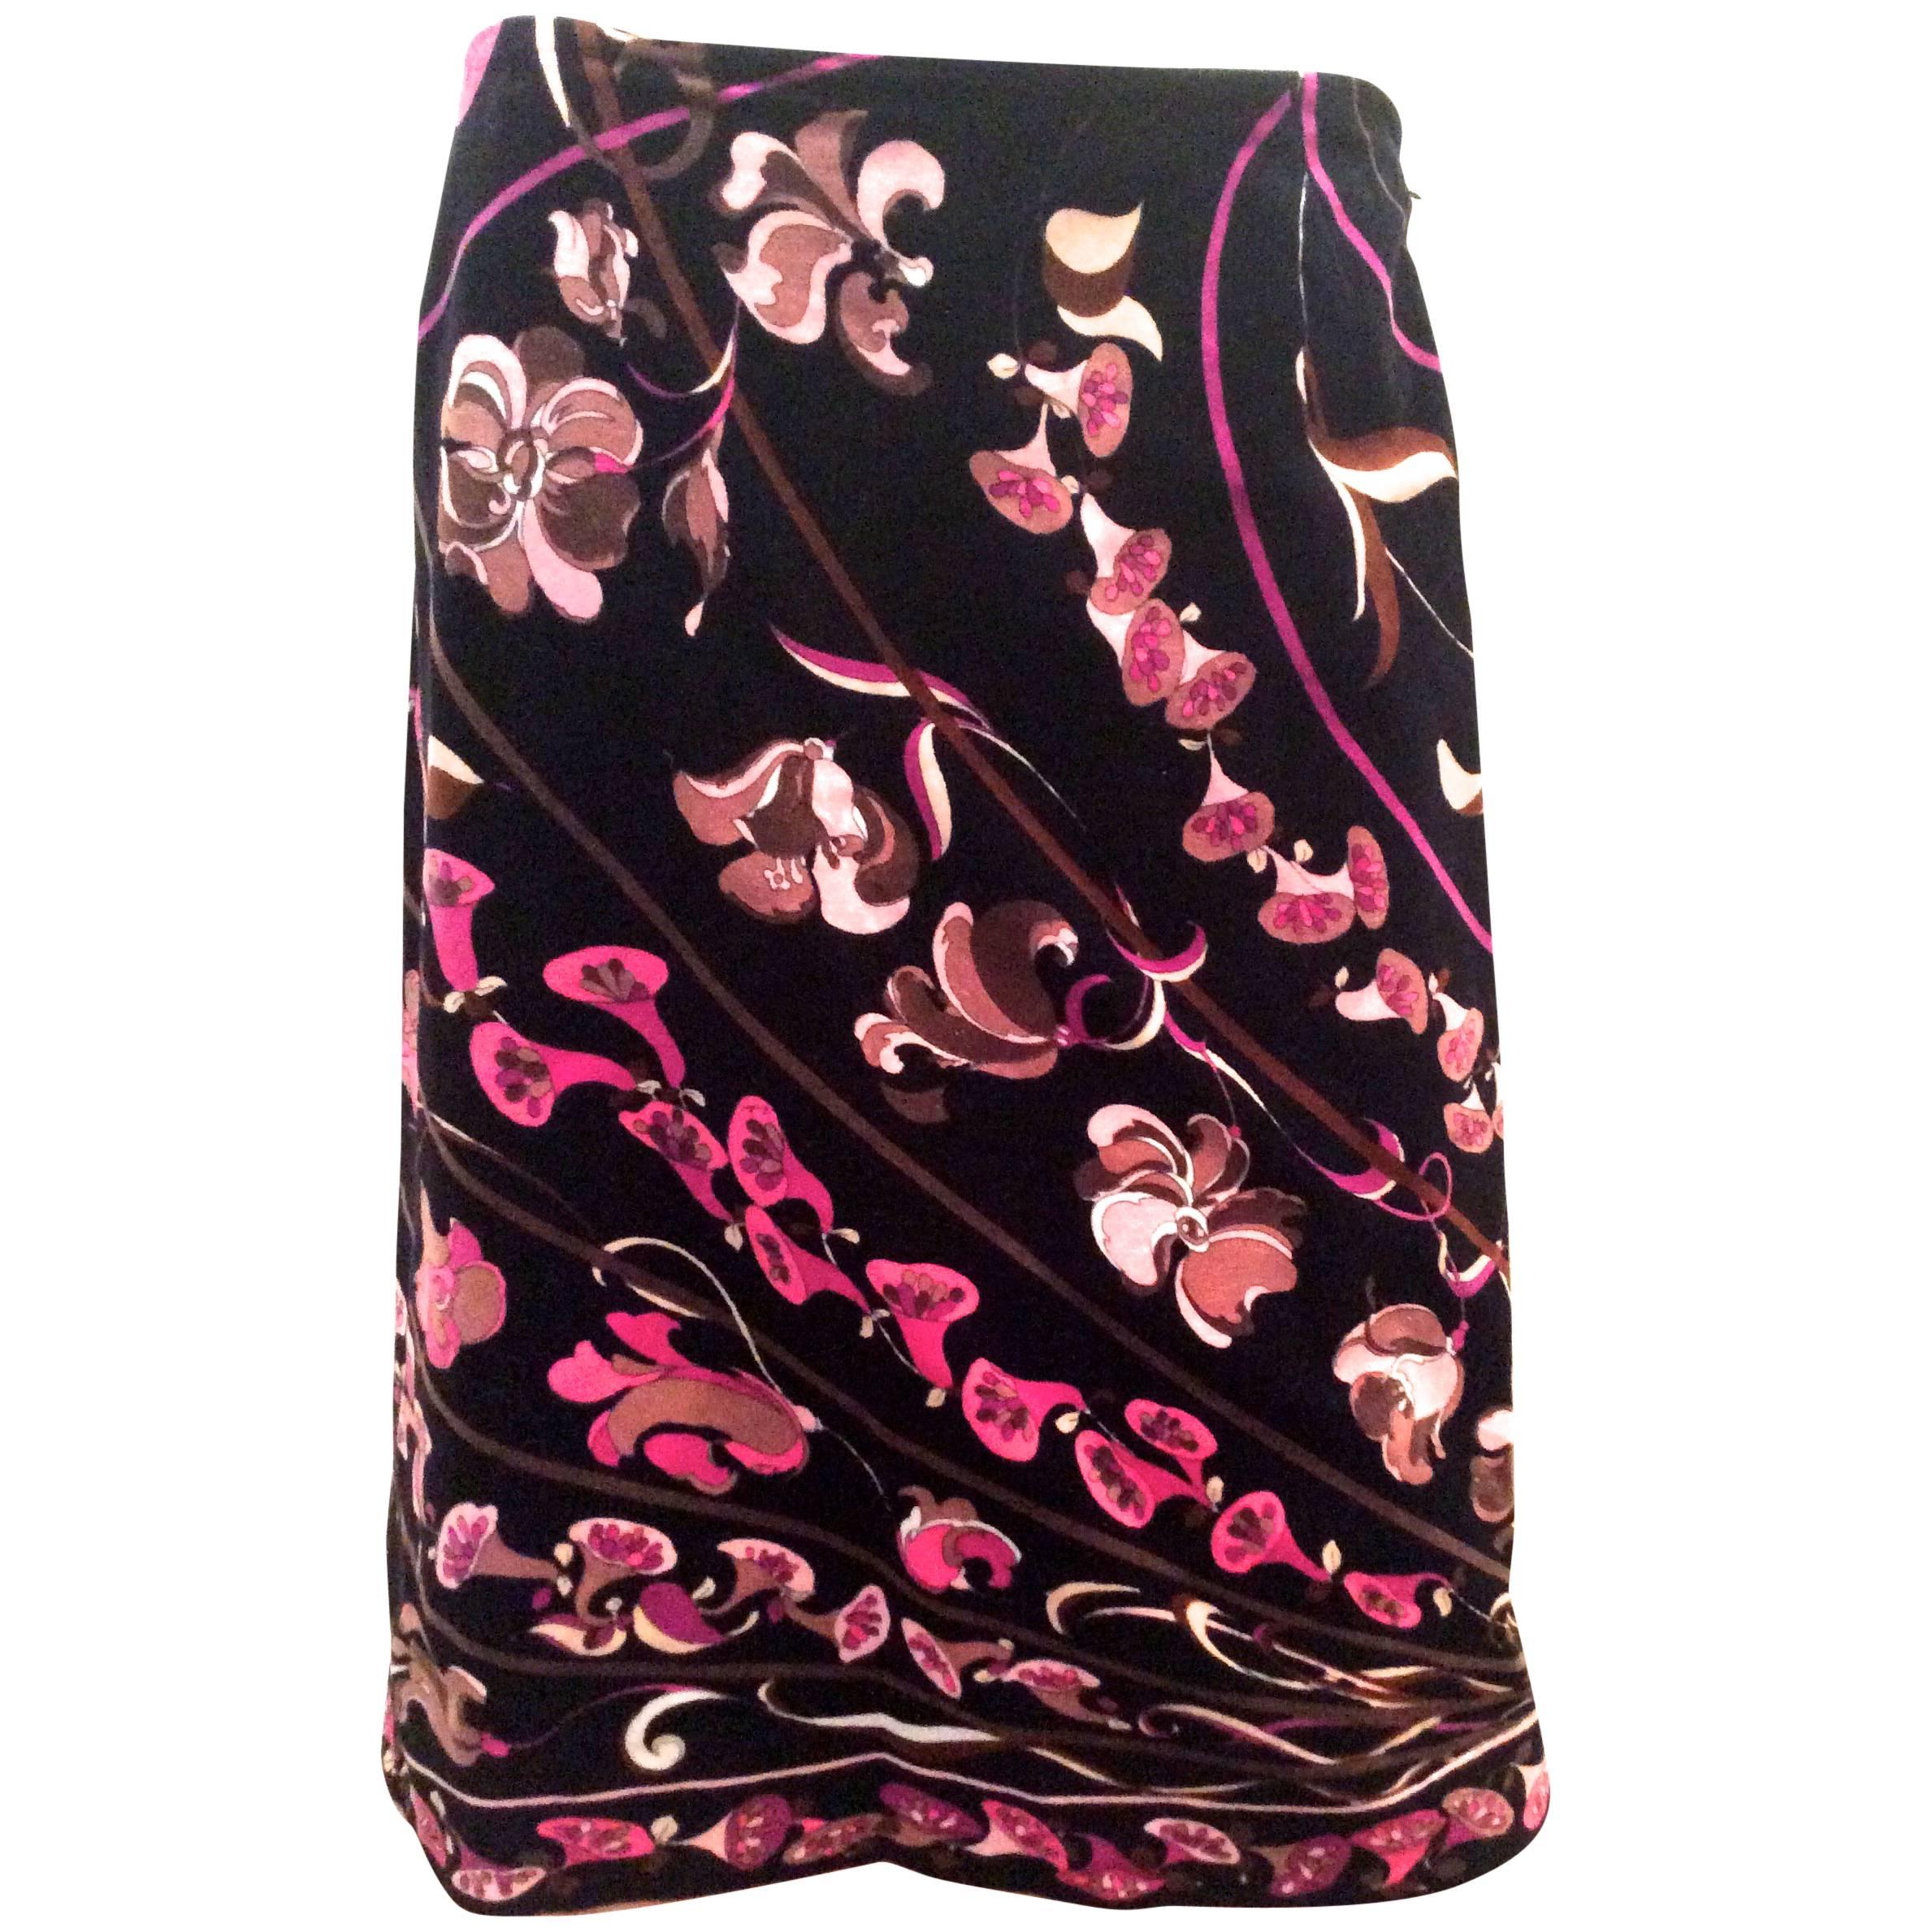 Emilio Pucci 1960's Black Velvet Print Skirt - Mint Condition For Sale